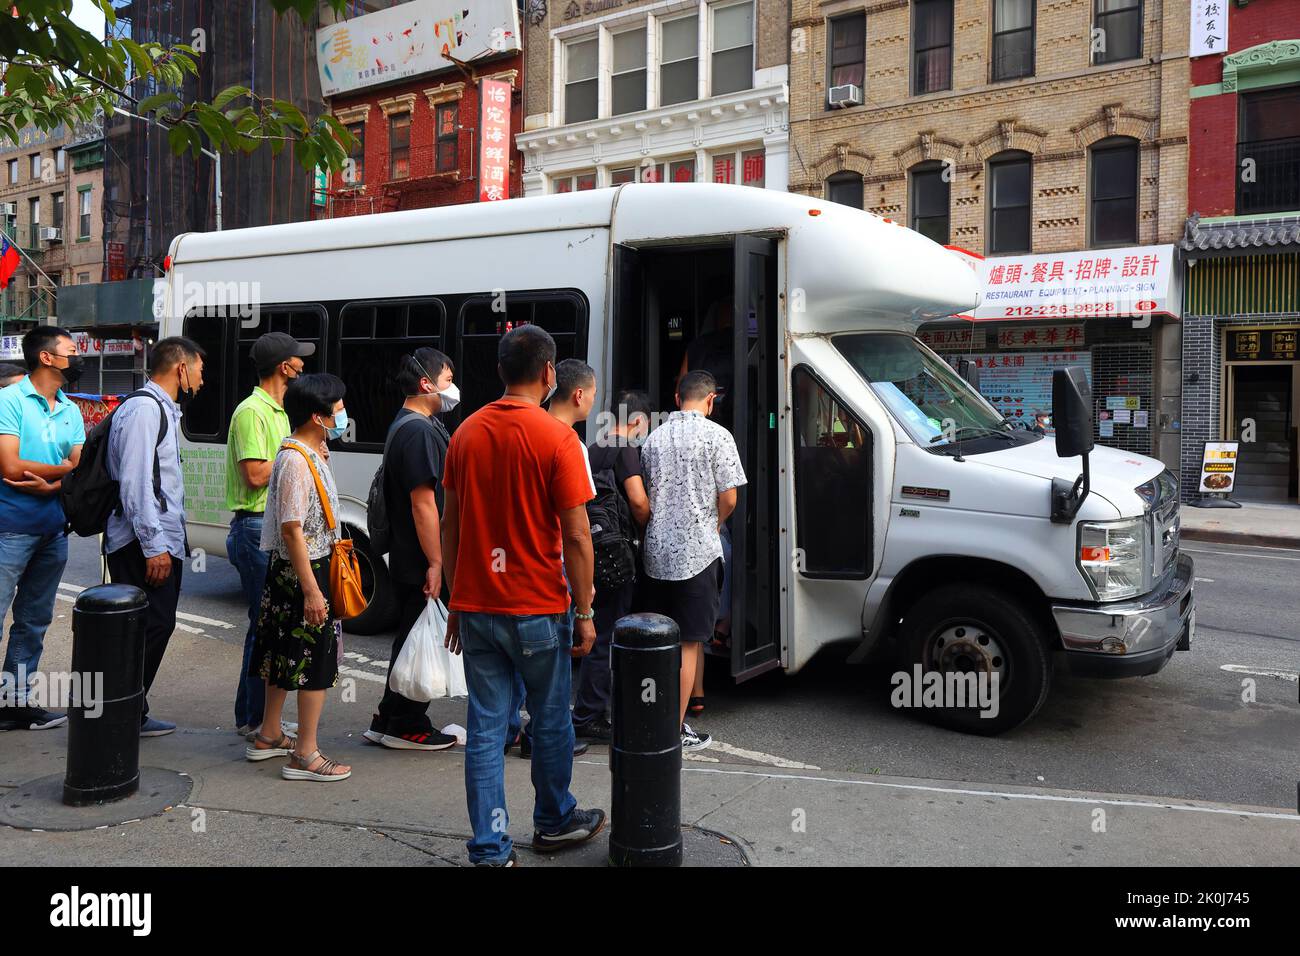 Asiatische Menschen chinesischer Abstammung in Manhattan Chinatown an Bord eines Dollarbusses mit Express-Shuttlebussen nach Flushing Chinatown. Stockfoto